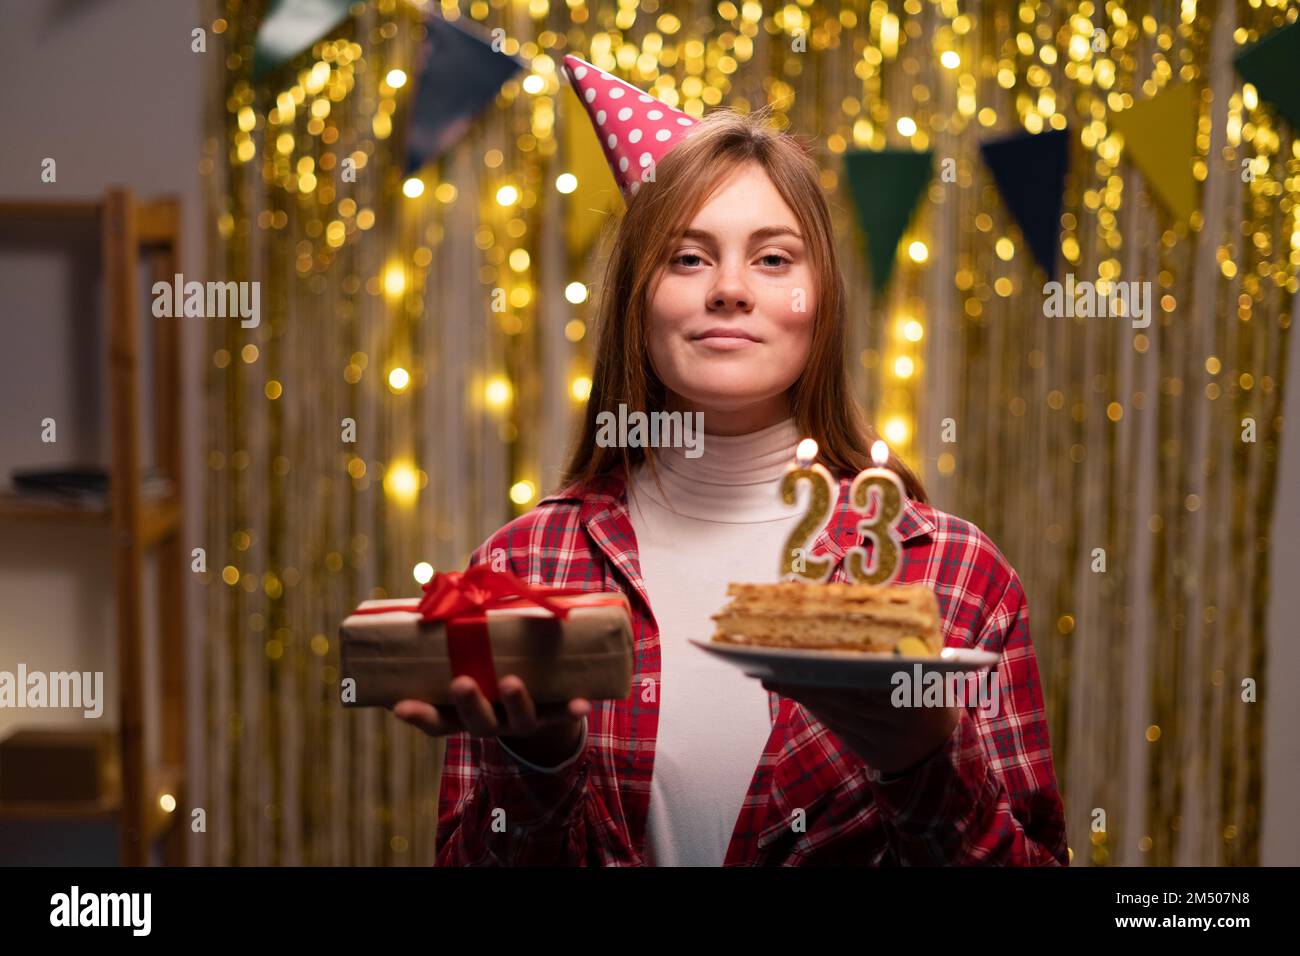 Eine junge Frau mit einem Teller mit leckerem Geburtstagskuchen und einem Geschenk im Partyhintergrund. Zum 23. Geburtstag. Speicherplatz kopieren Stockfoto